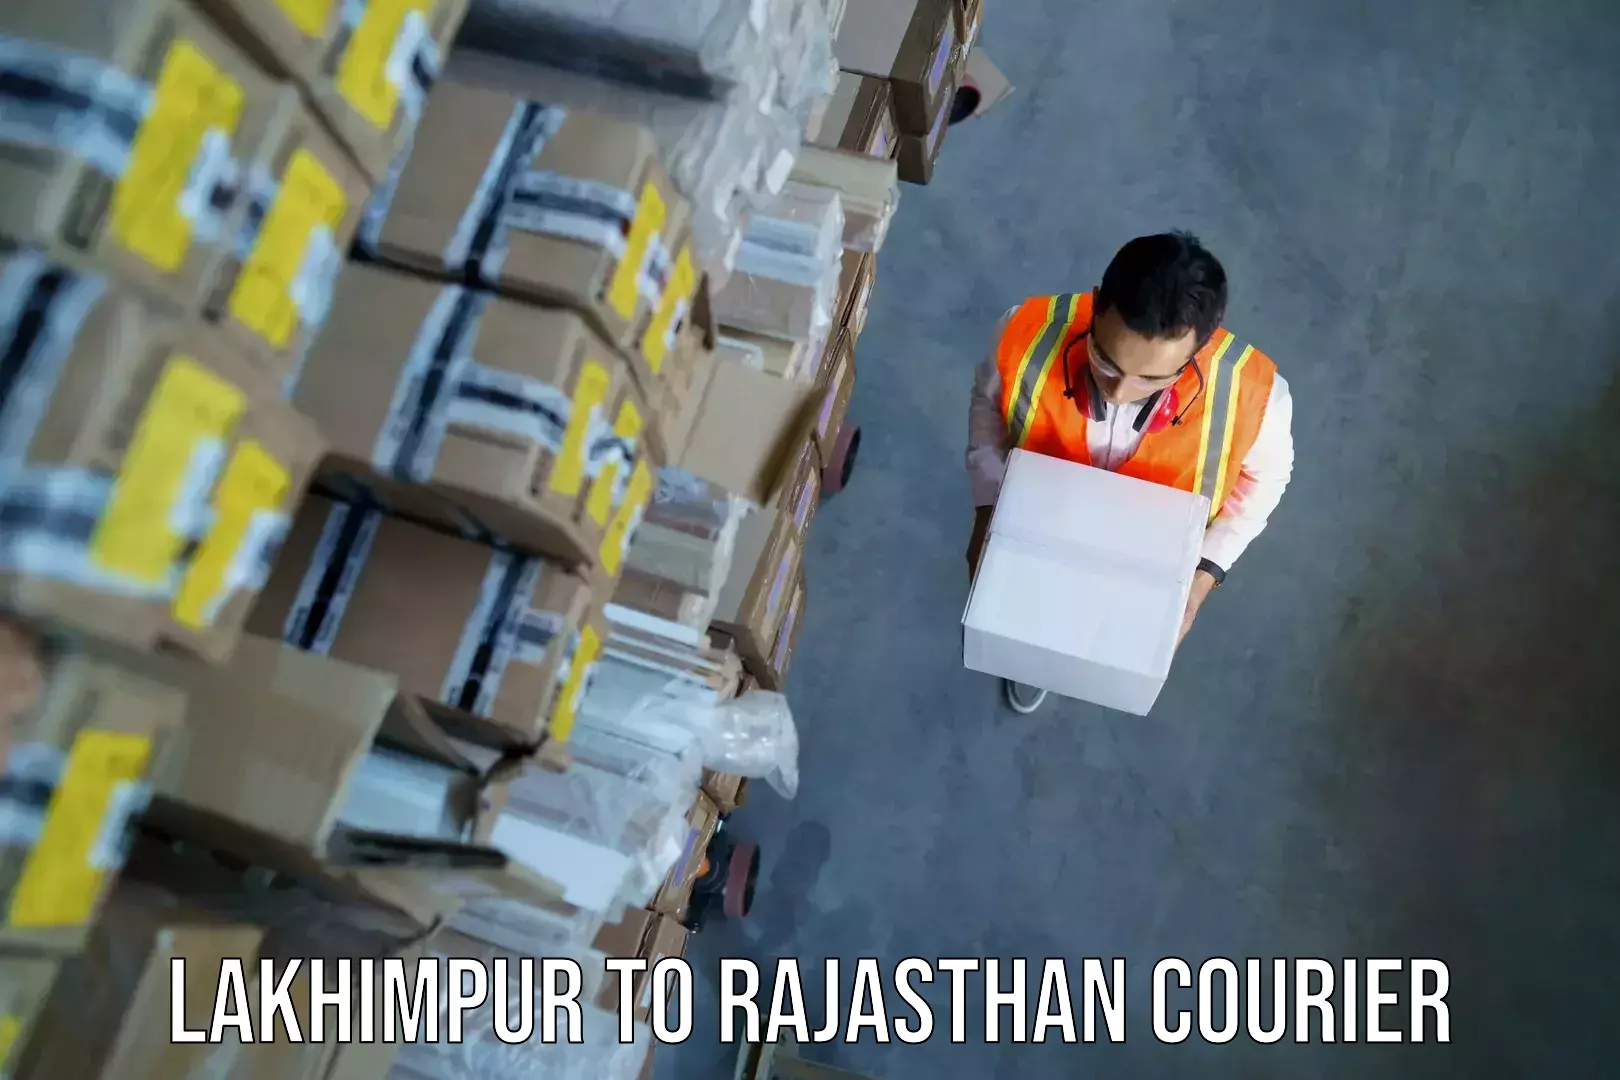 Baggage shipping optimization Lakhimpur to Rajasthan